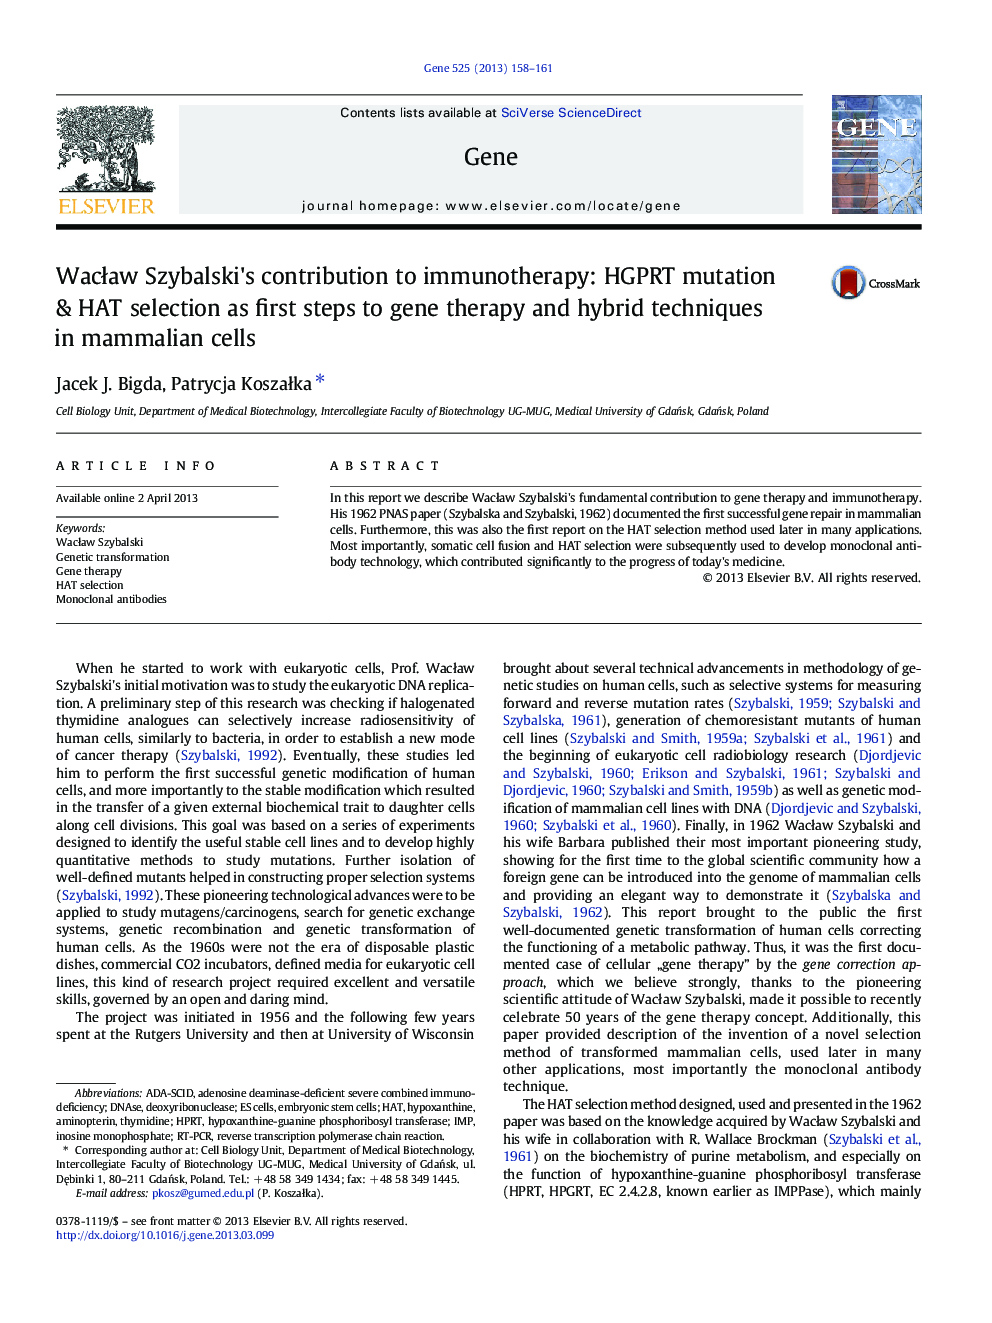 WacÅaw Szybalski's contribution to immunotherapy: HGPRT mutation & HAT selection as first steps to gene therapy and hybrid techniques in mammalian cells